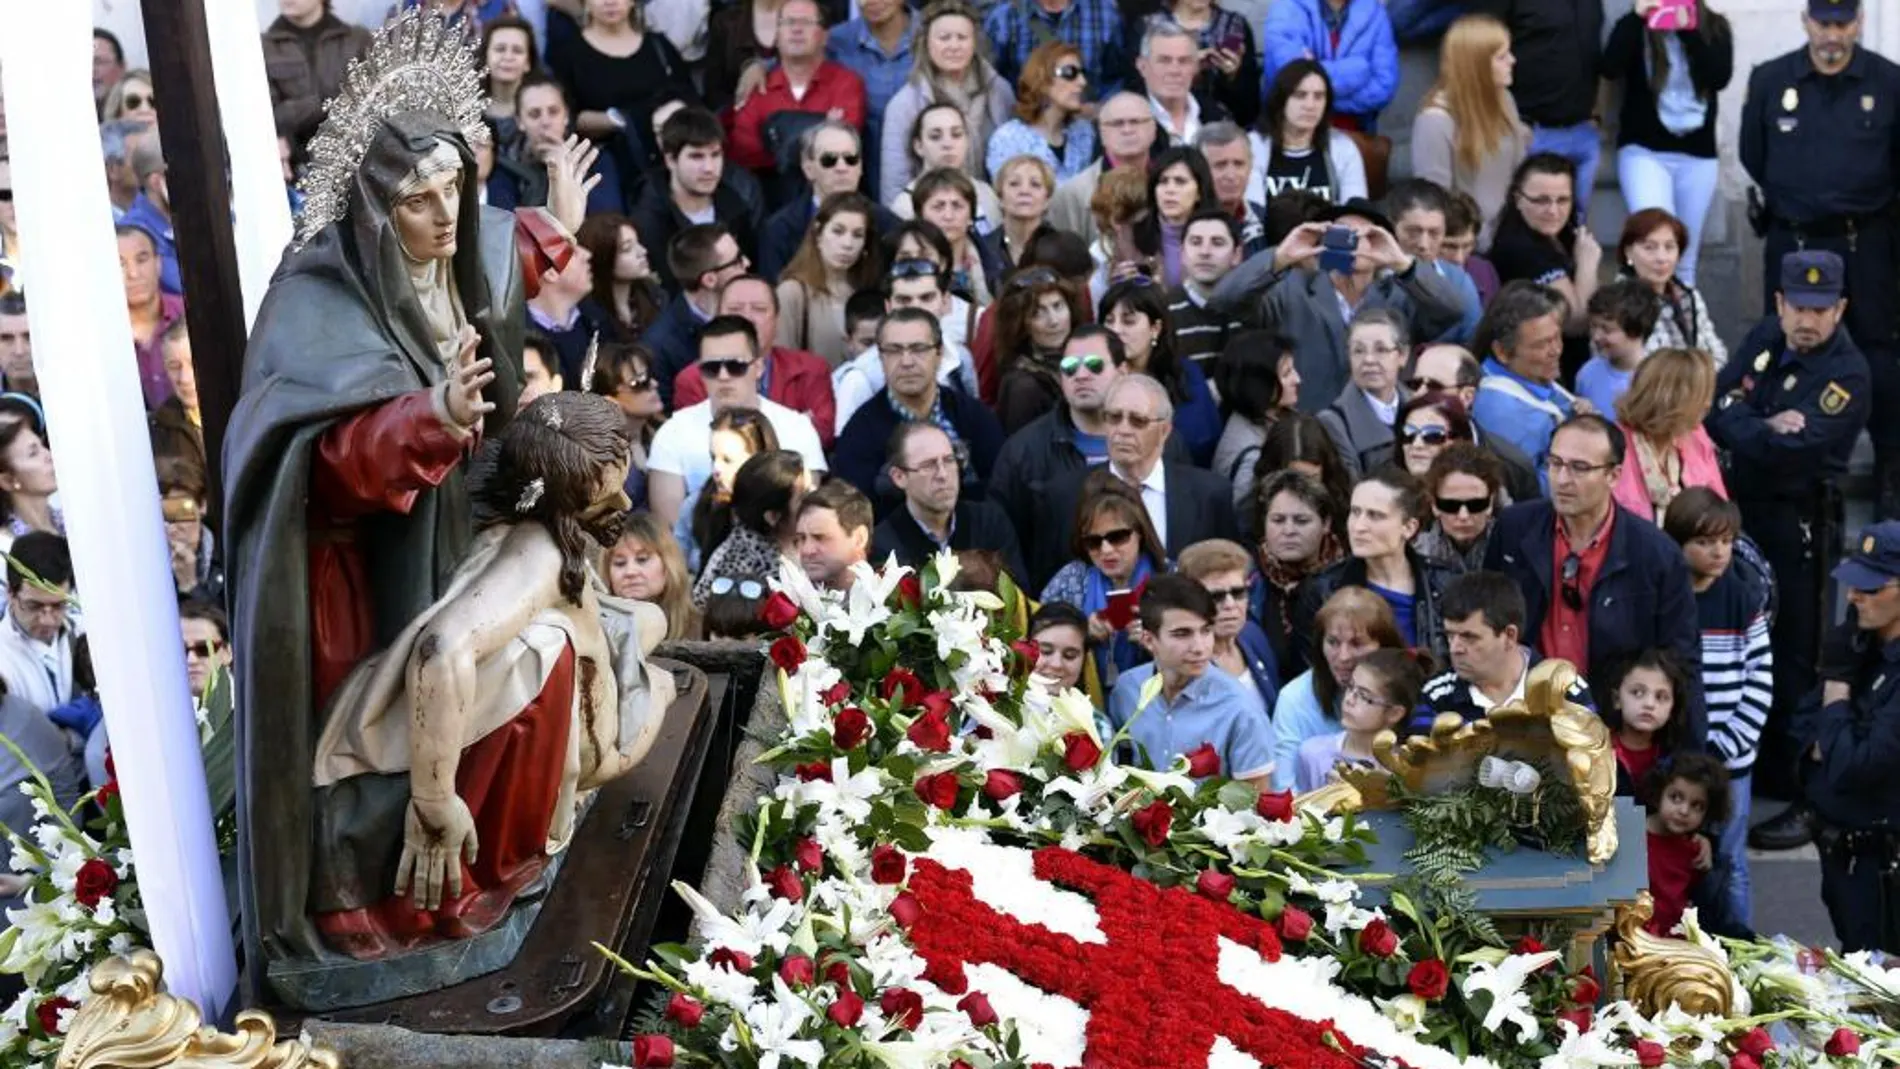 La Cofradía de Nuestra Señora de la Piedad de Valladolid durante la procesión de Penitencia y Caridad de Jueves Santo